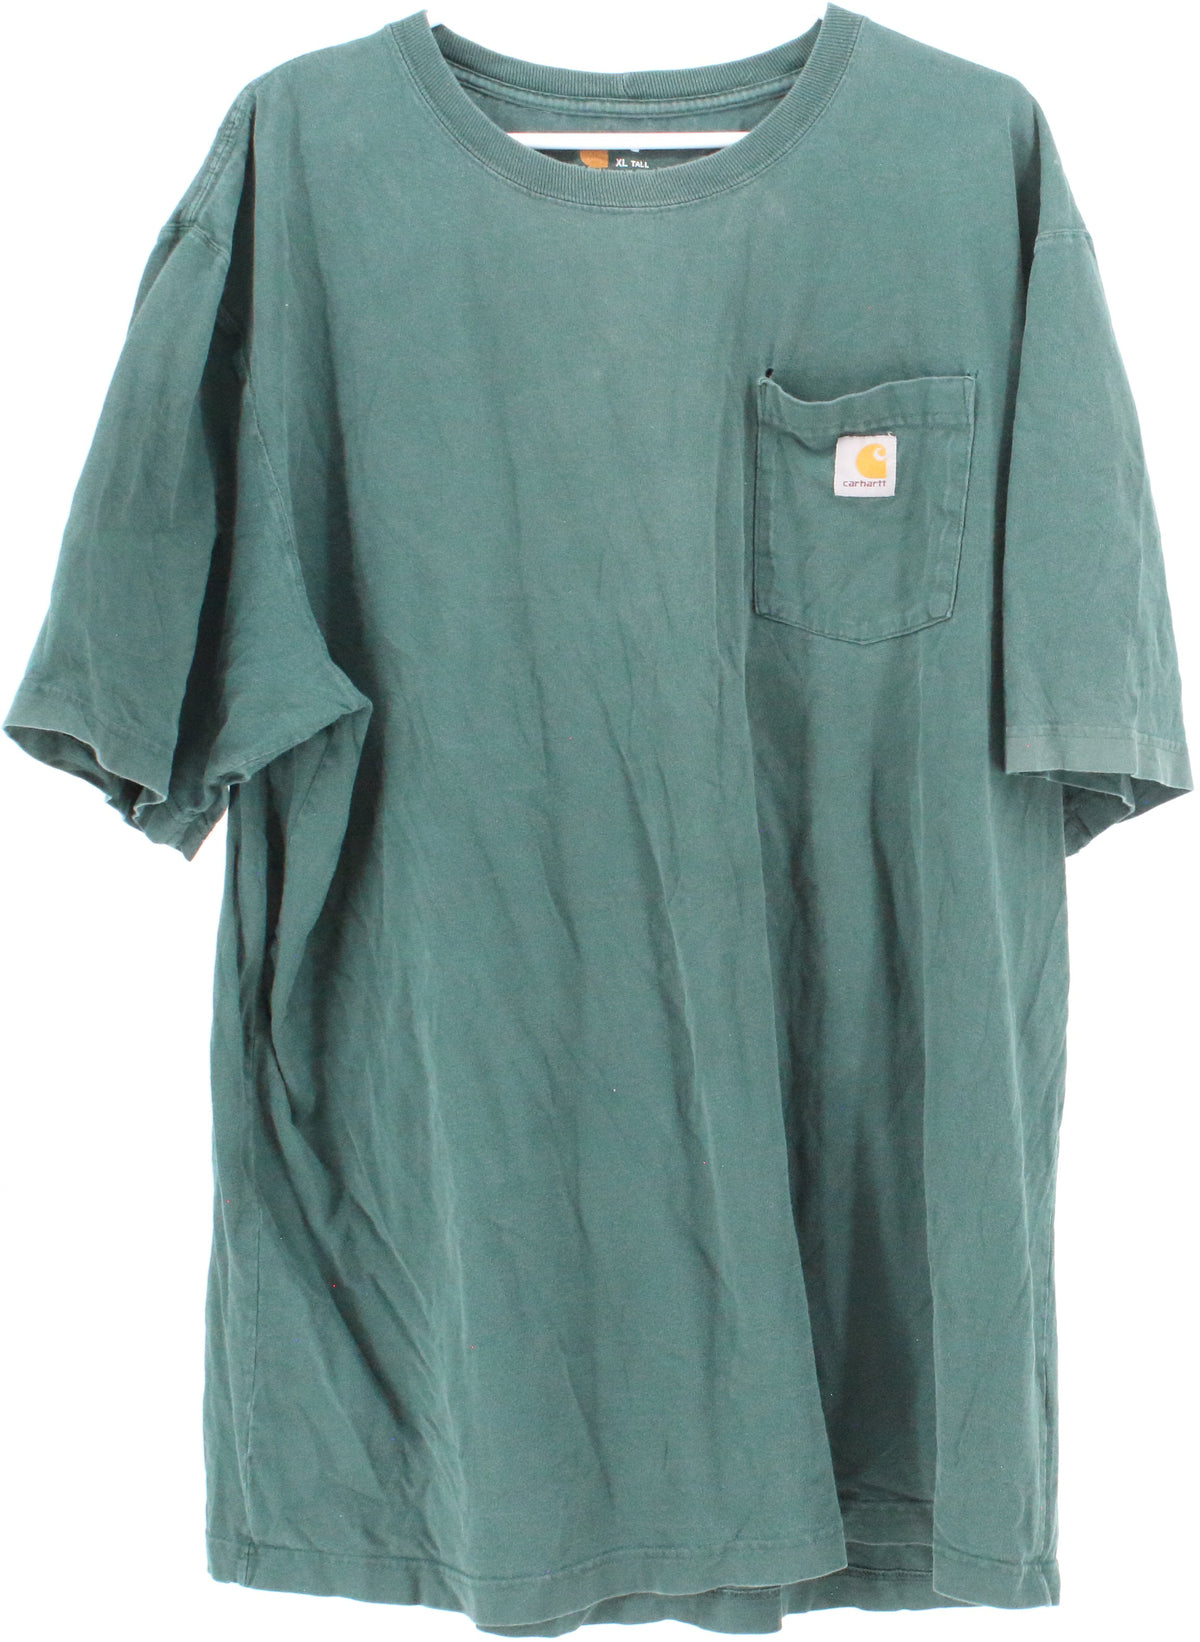 Carhartt Dark Green Front Pocket T-Shirt